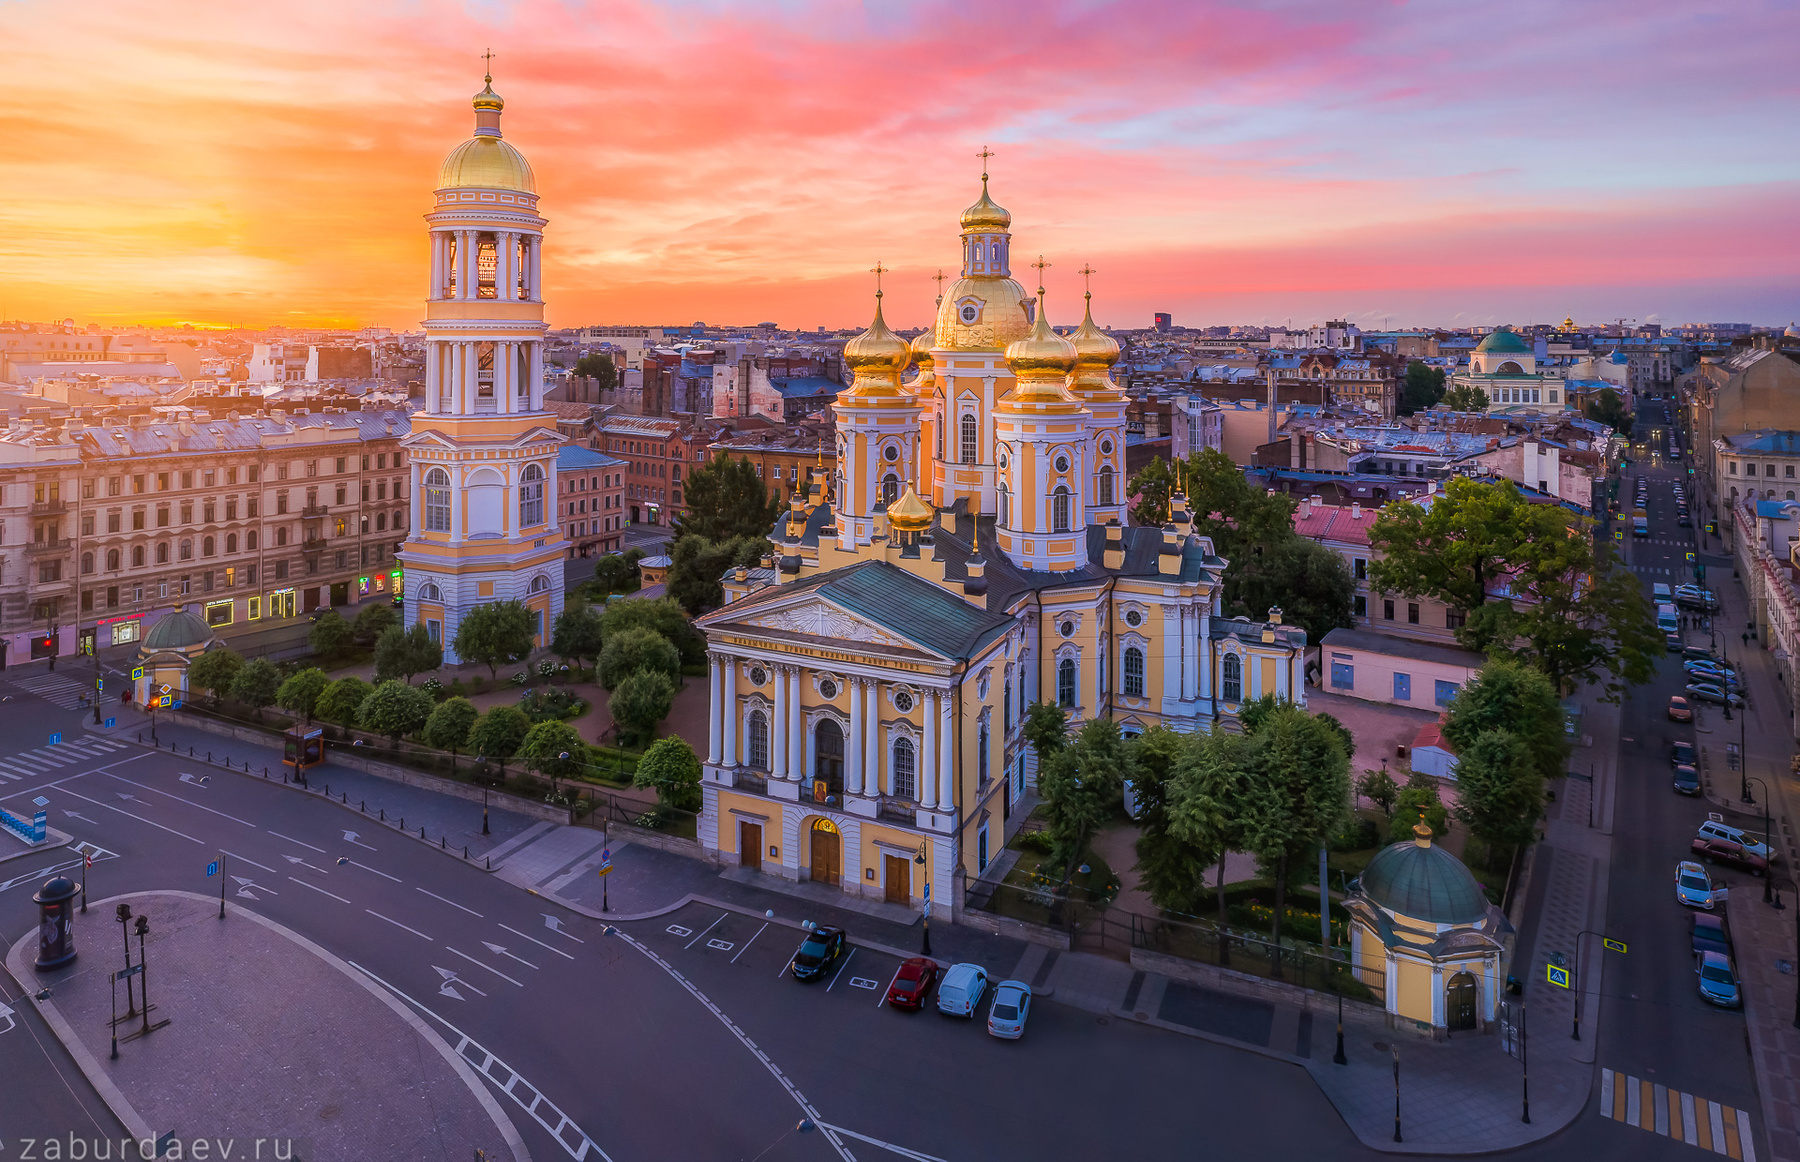 Владимирский собор россия петербург утро рассвет лето